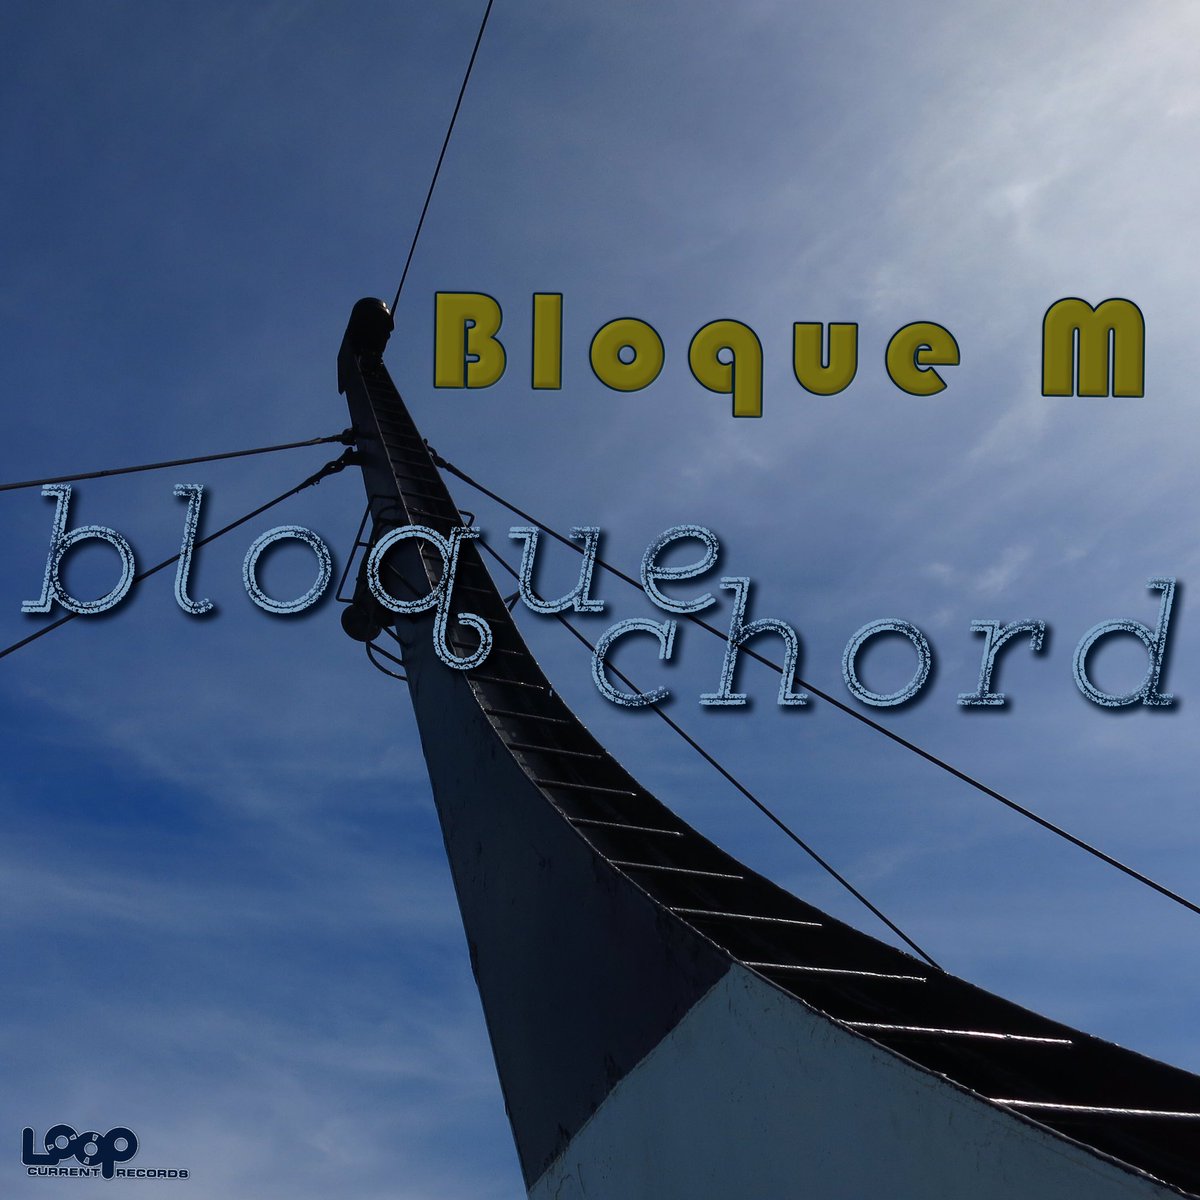 #BloqueChord

#TECHNO #TECHNOMUSIC

#BloqueM @BloqueMetro 

#LoopCurrentRecords @LoopCurrentRec 

music.apple.com/us/album/bloqu…